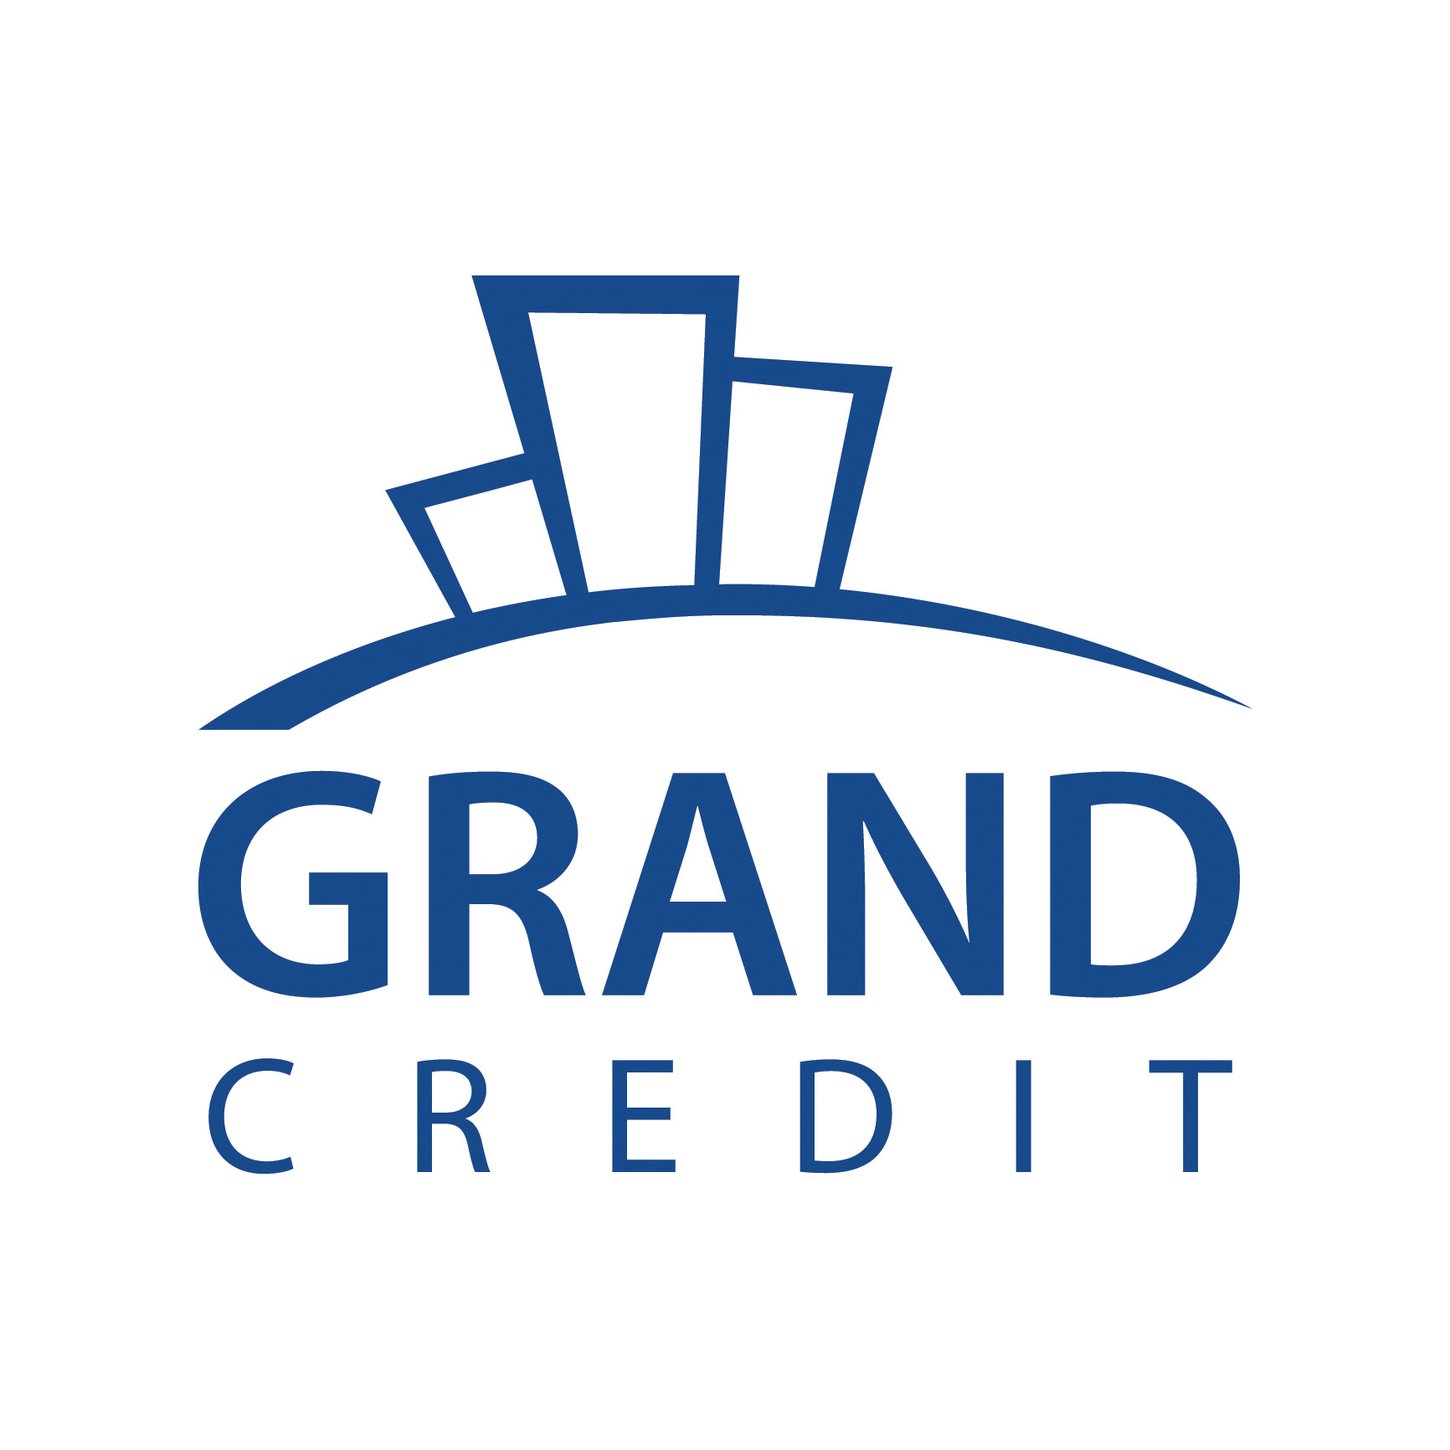 Grand Credit поддерживает социальный центр "Mercendarbe"